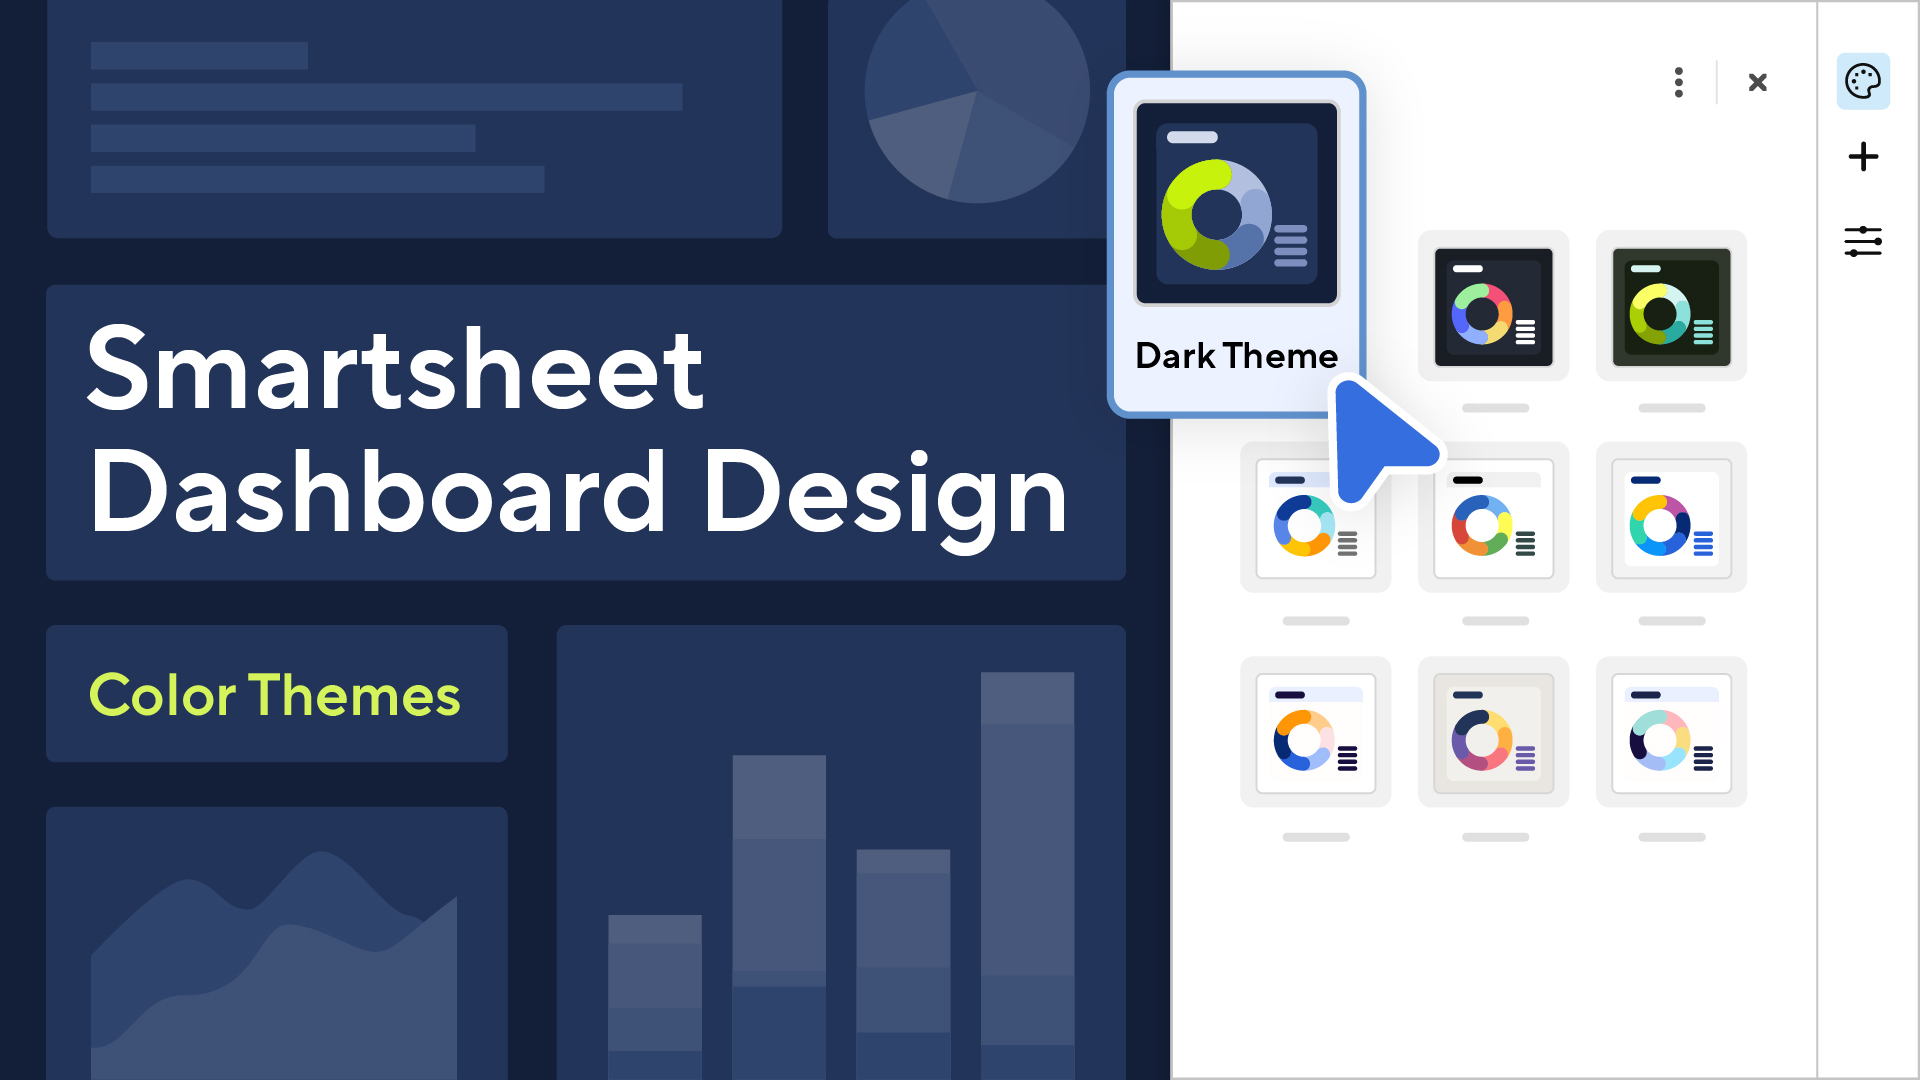 Smartsheet Dashboard Design: Color Schemes